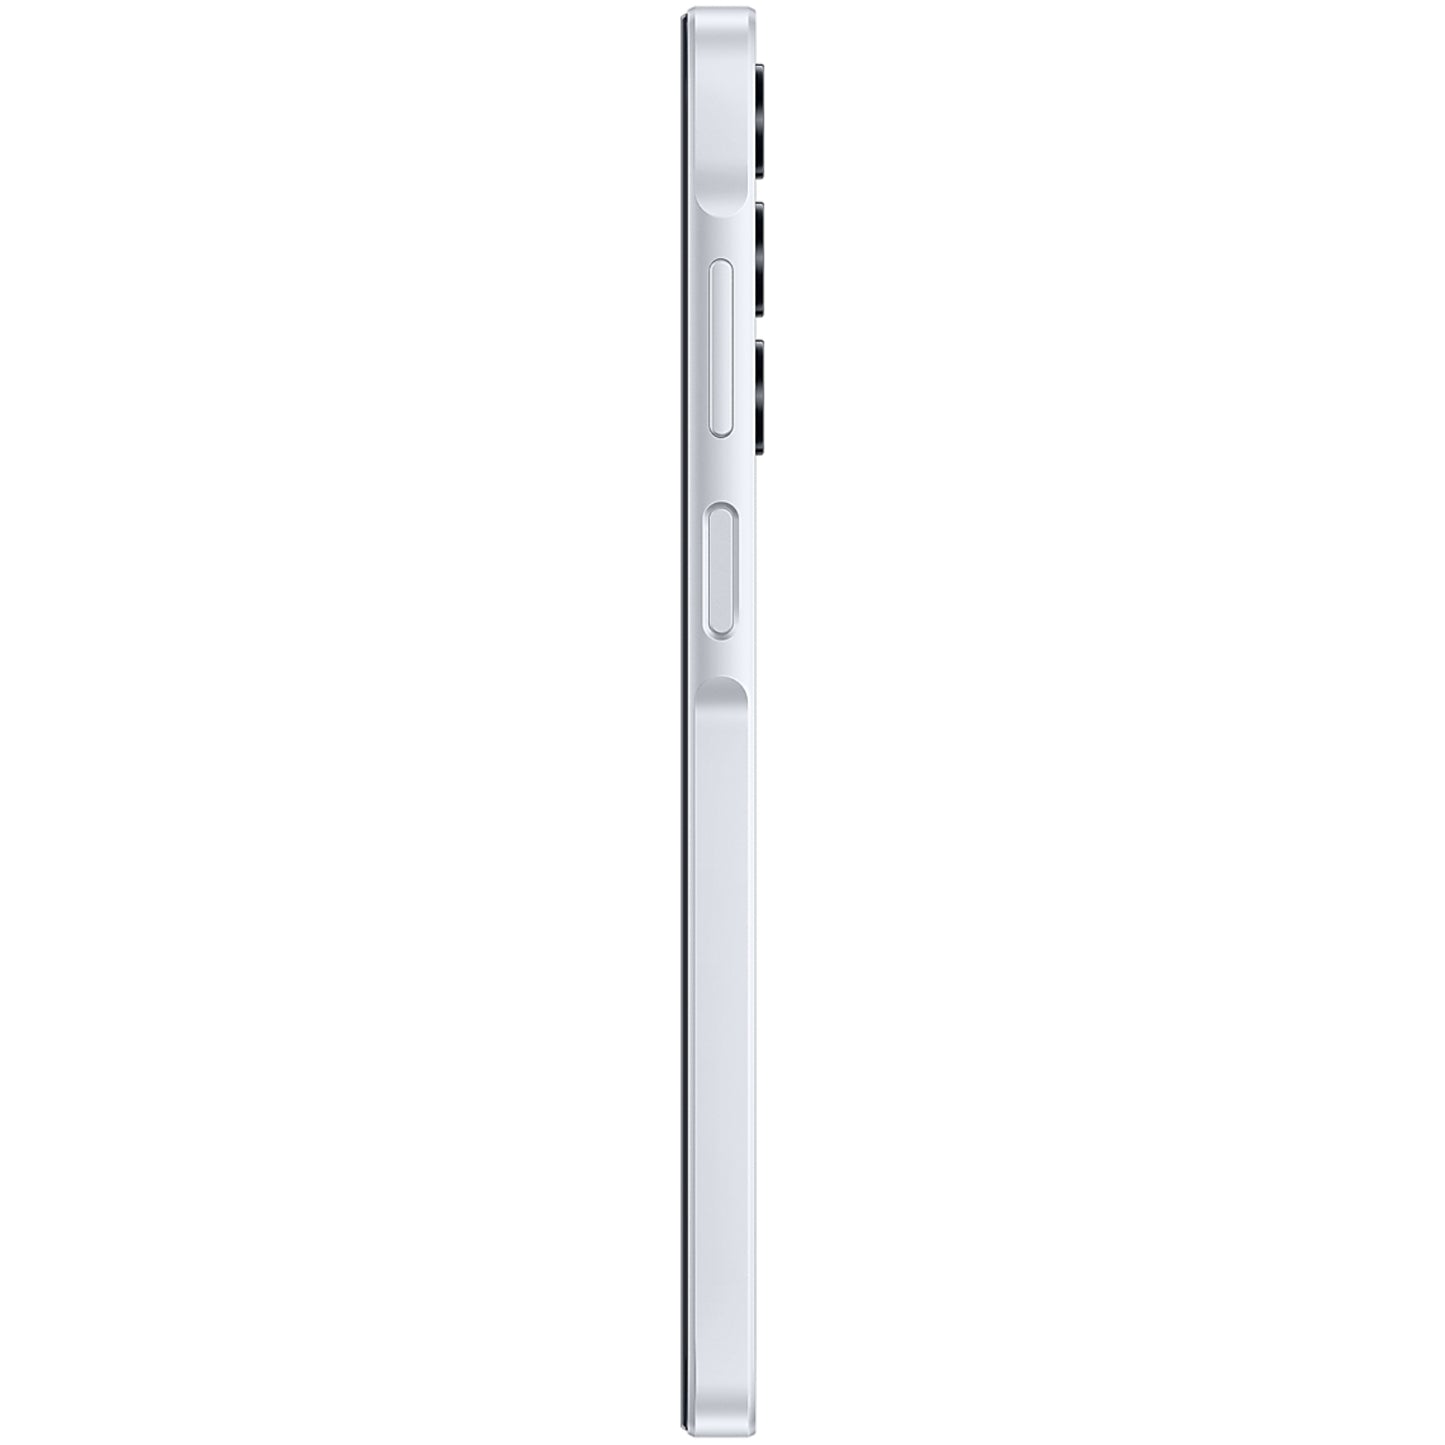 Samsung Galaxy A25 Dual nano sim A256E (8GB ram)